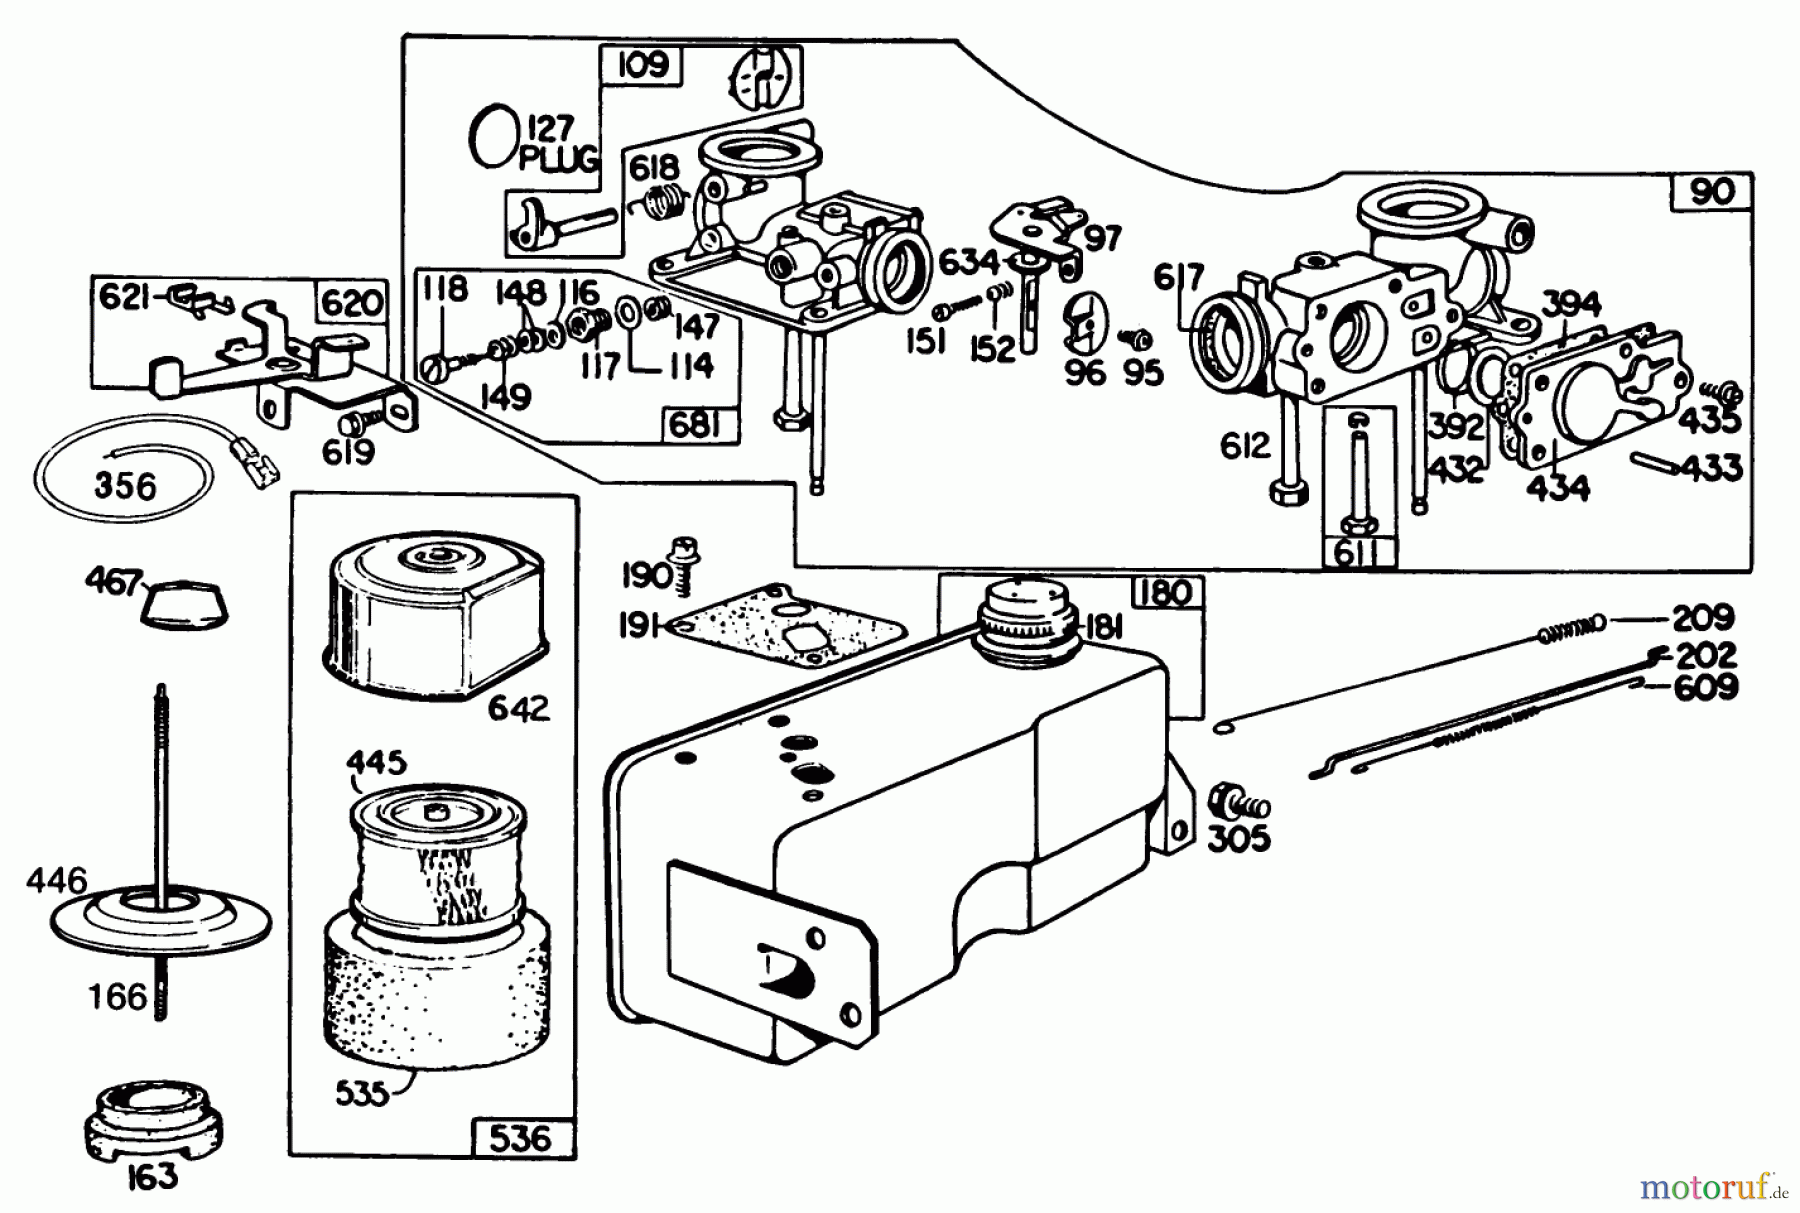  Toro Neu Mowers, Walk-Behind Seite 2 22015 - Toro Lawnmower, 1986 (6000001-6999999) ENGINE BRIGGS & STRATTON MODEL 131922-0163-01 #2